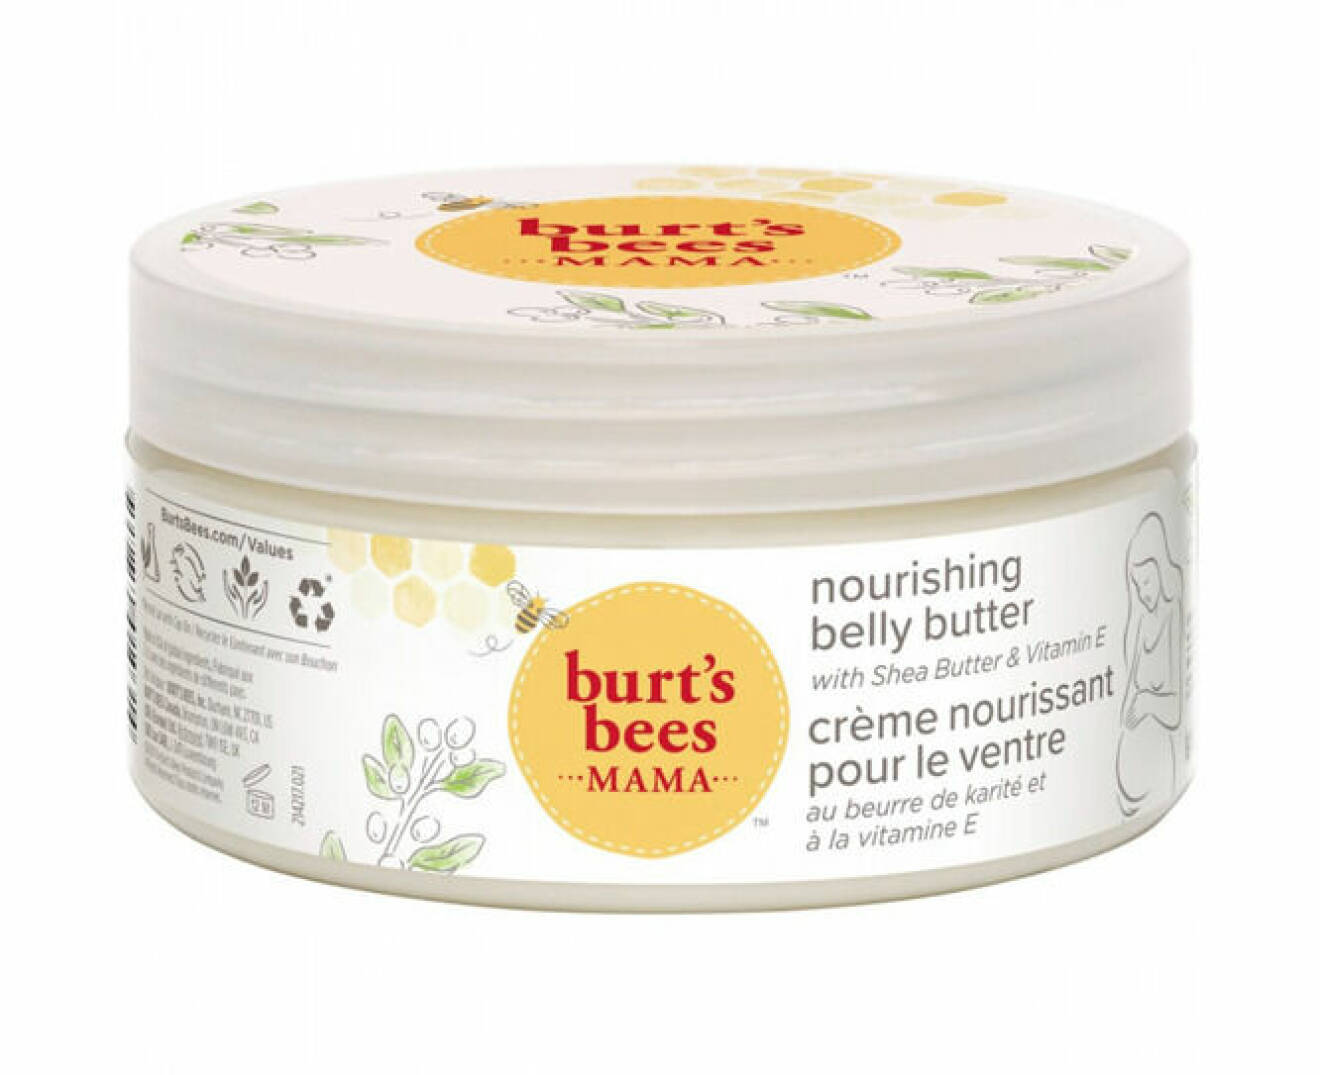 Burt's bees mama belly butter